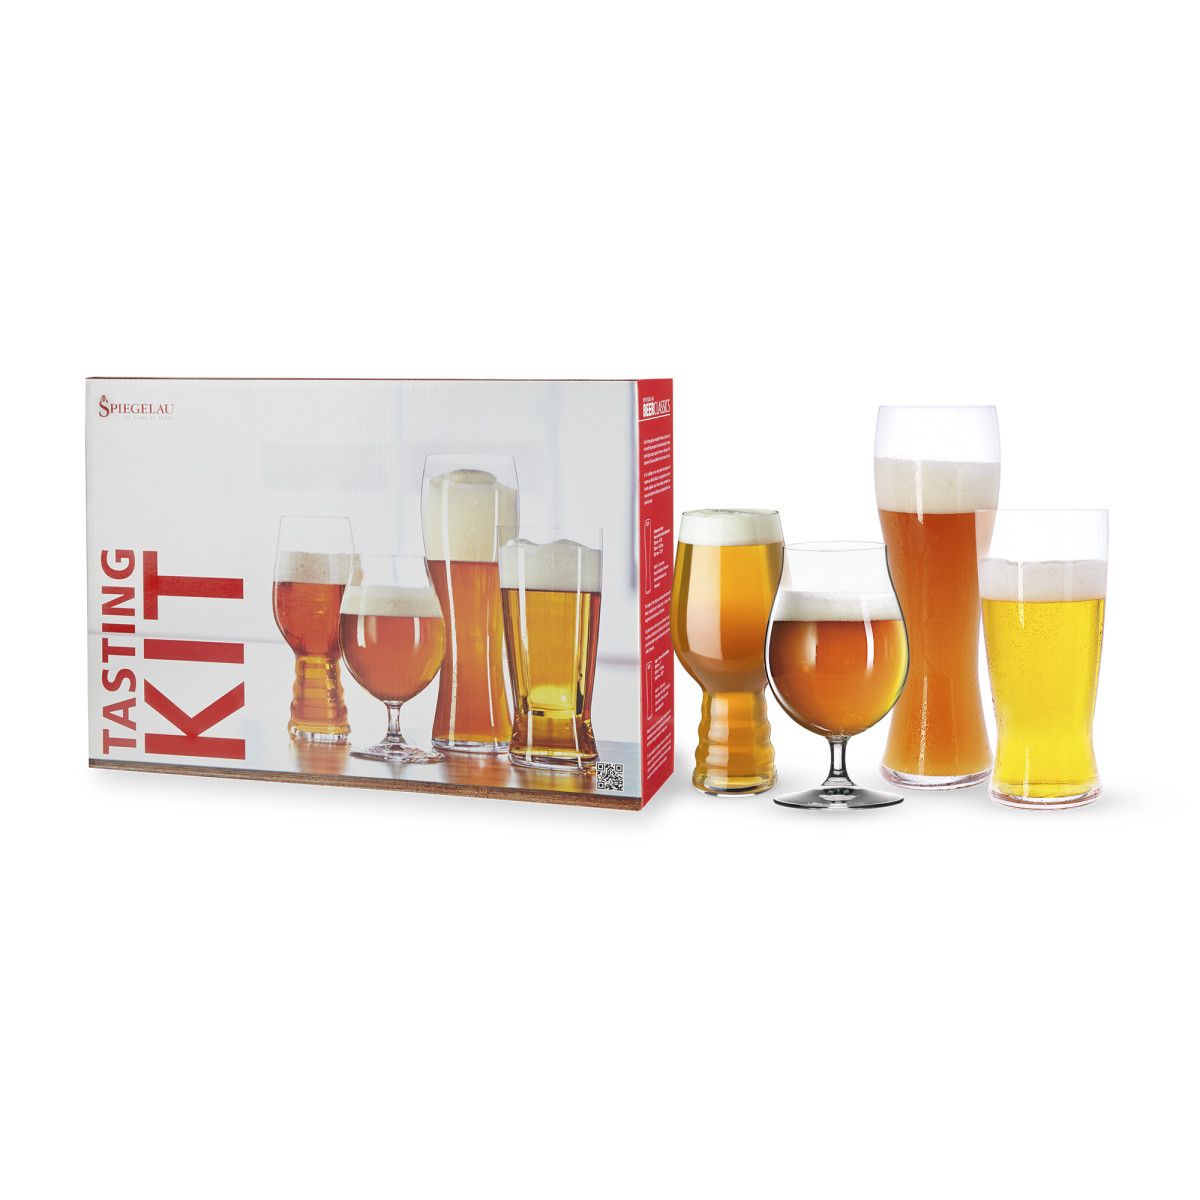 Spiegelau Tasting Kit, Craft Beer